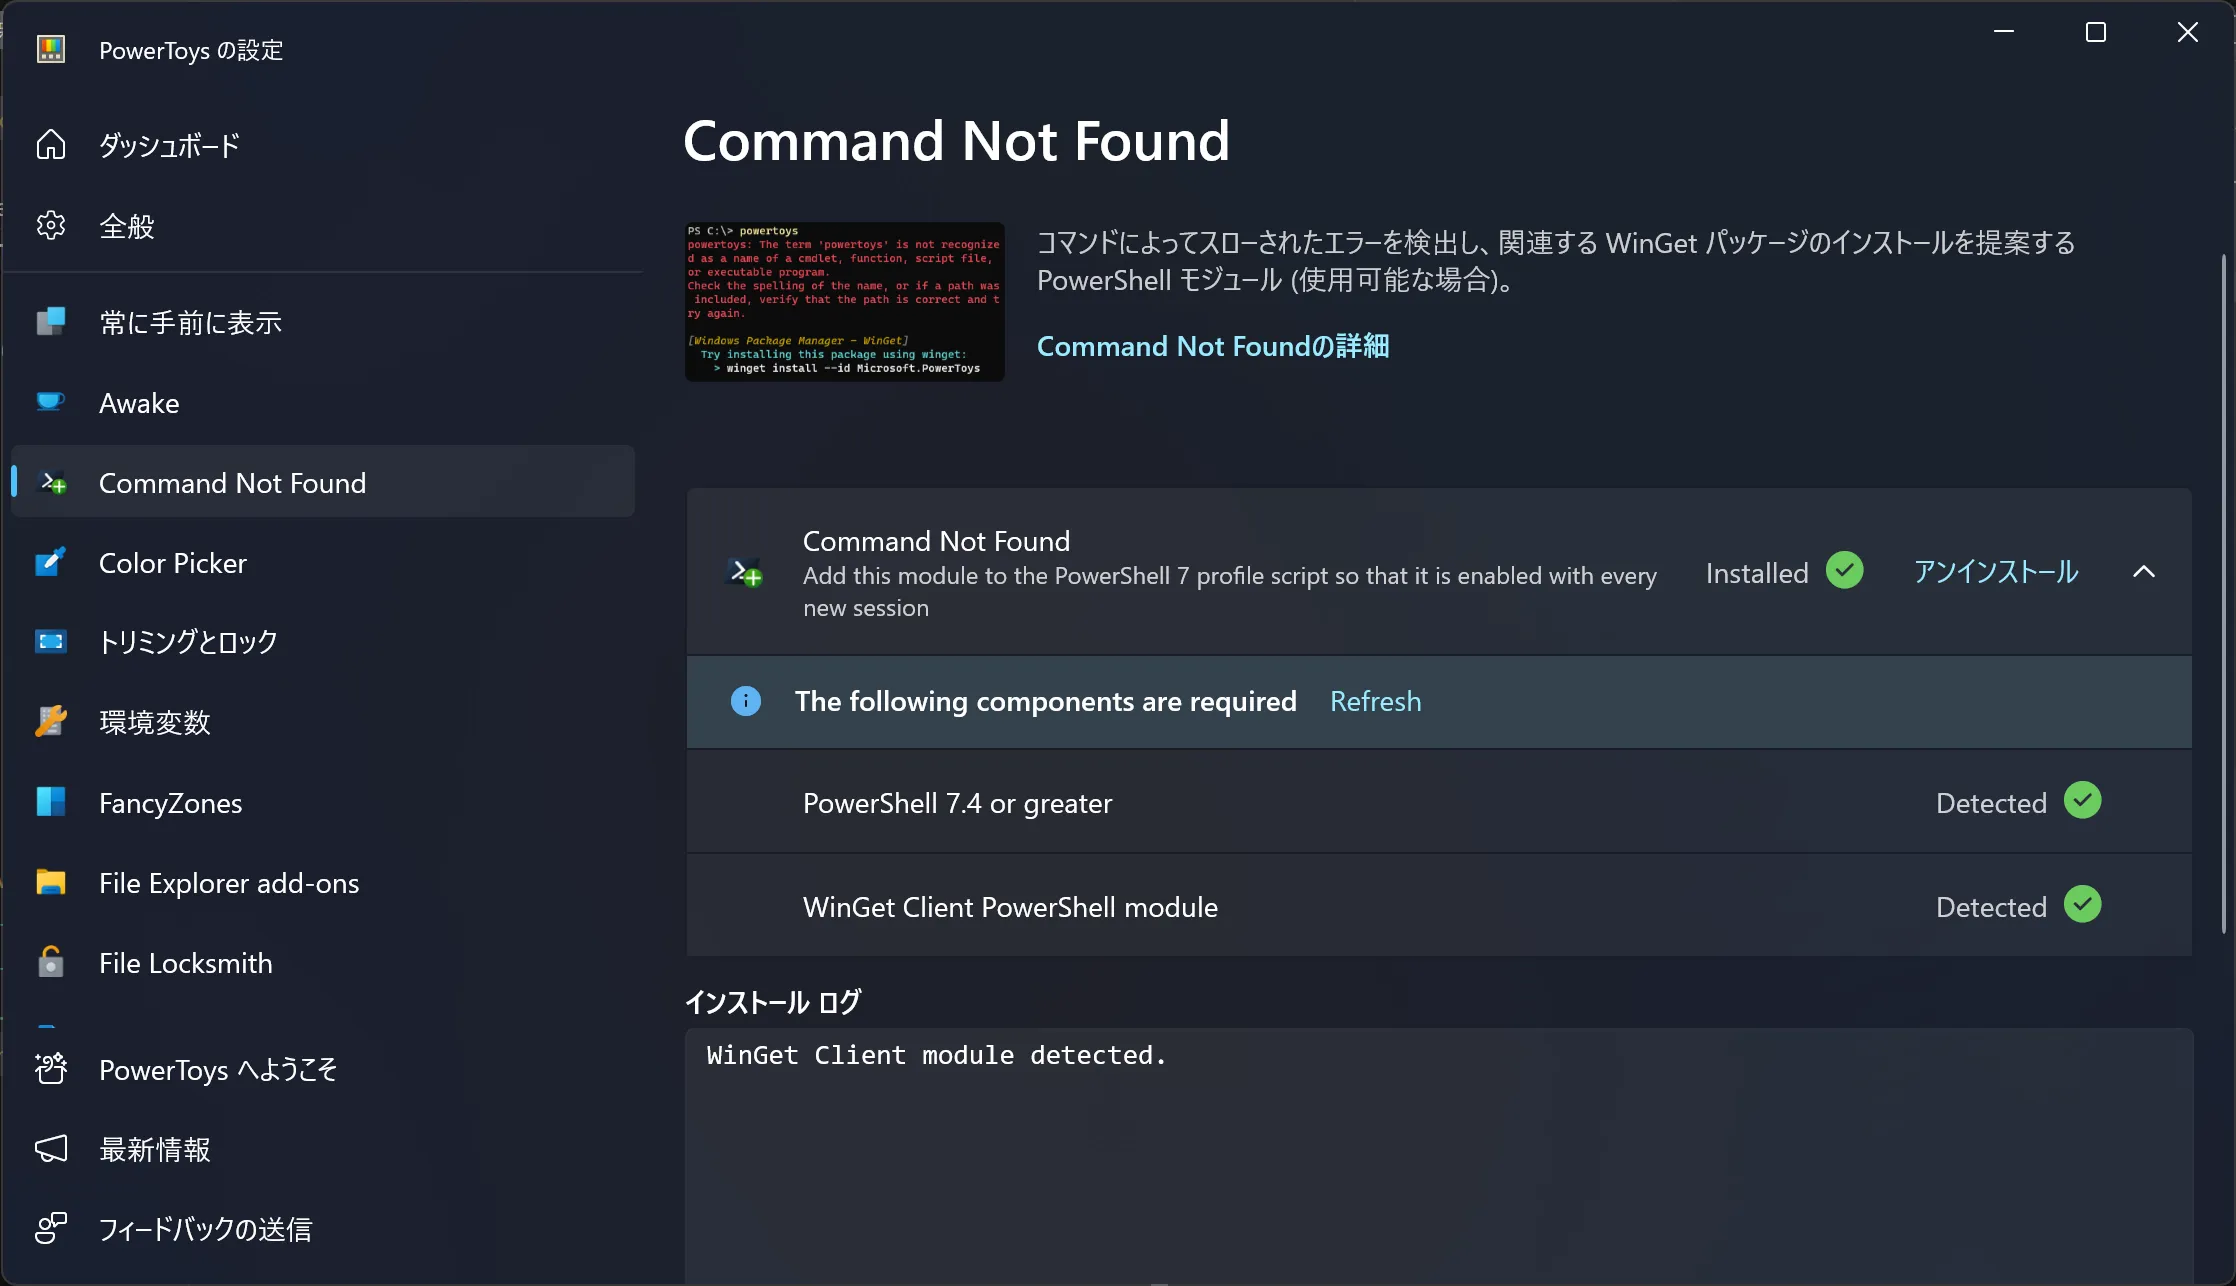 Command Not Foundの実行に必要なものをすべてインストールした画面